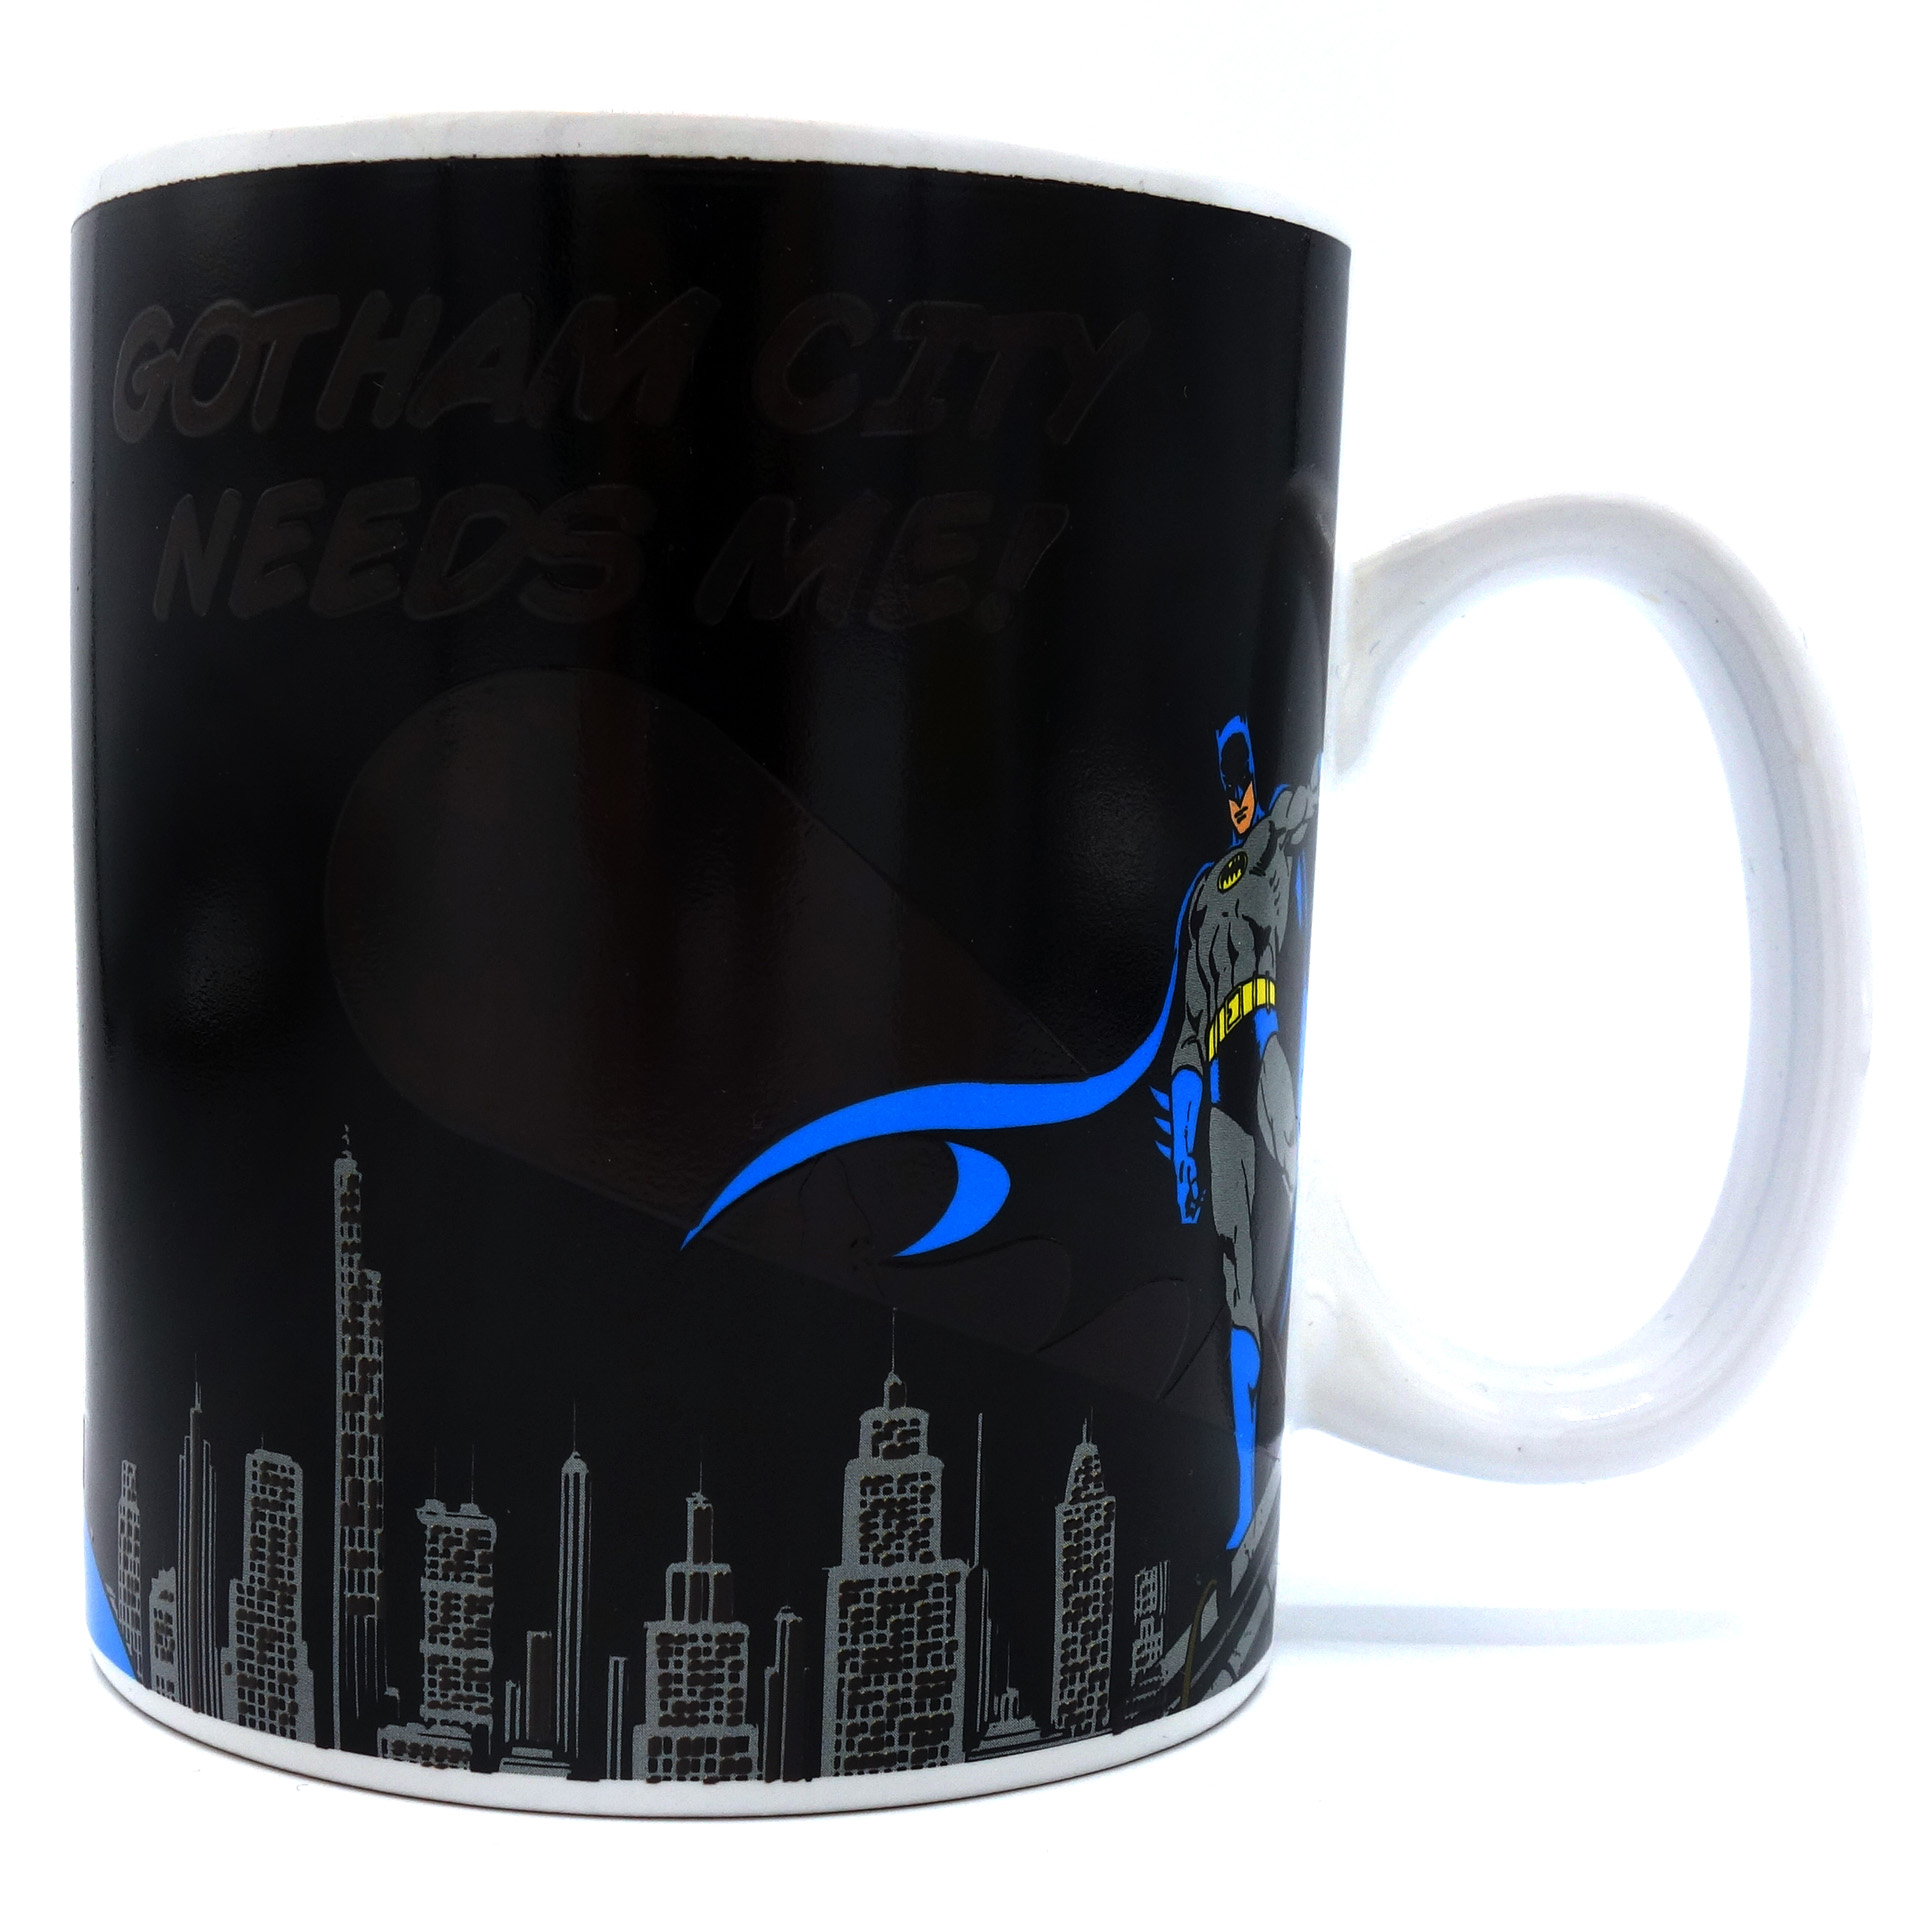 Batman Zaubertasse "Gotham City Needs Me" Heat Changing Mug